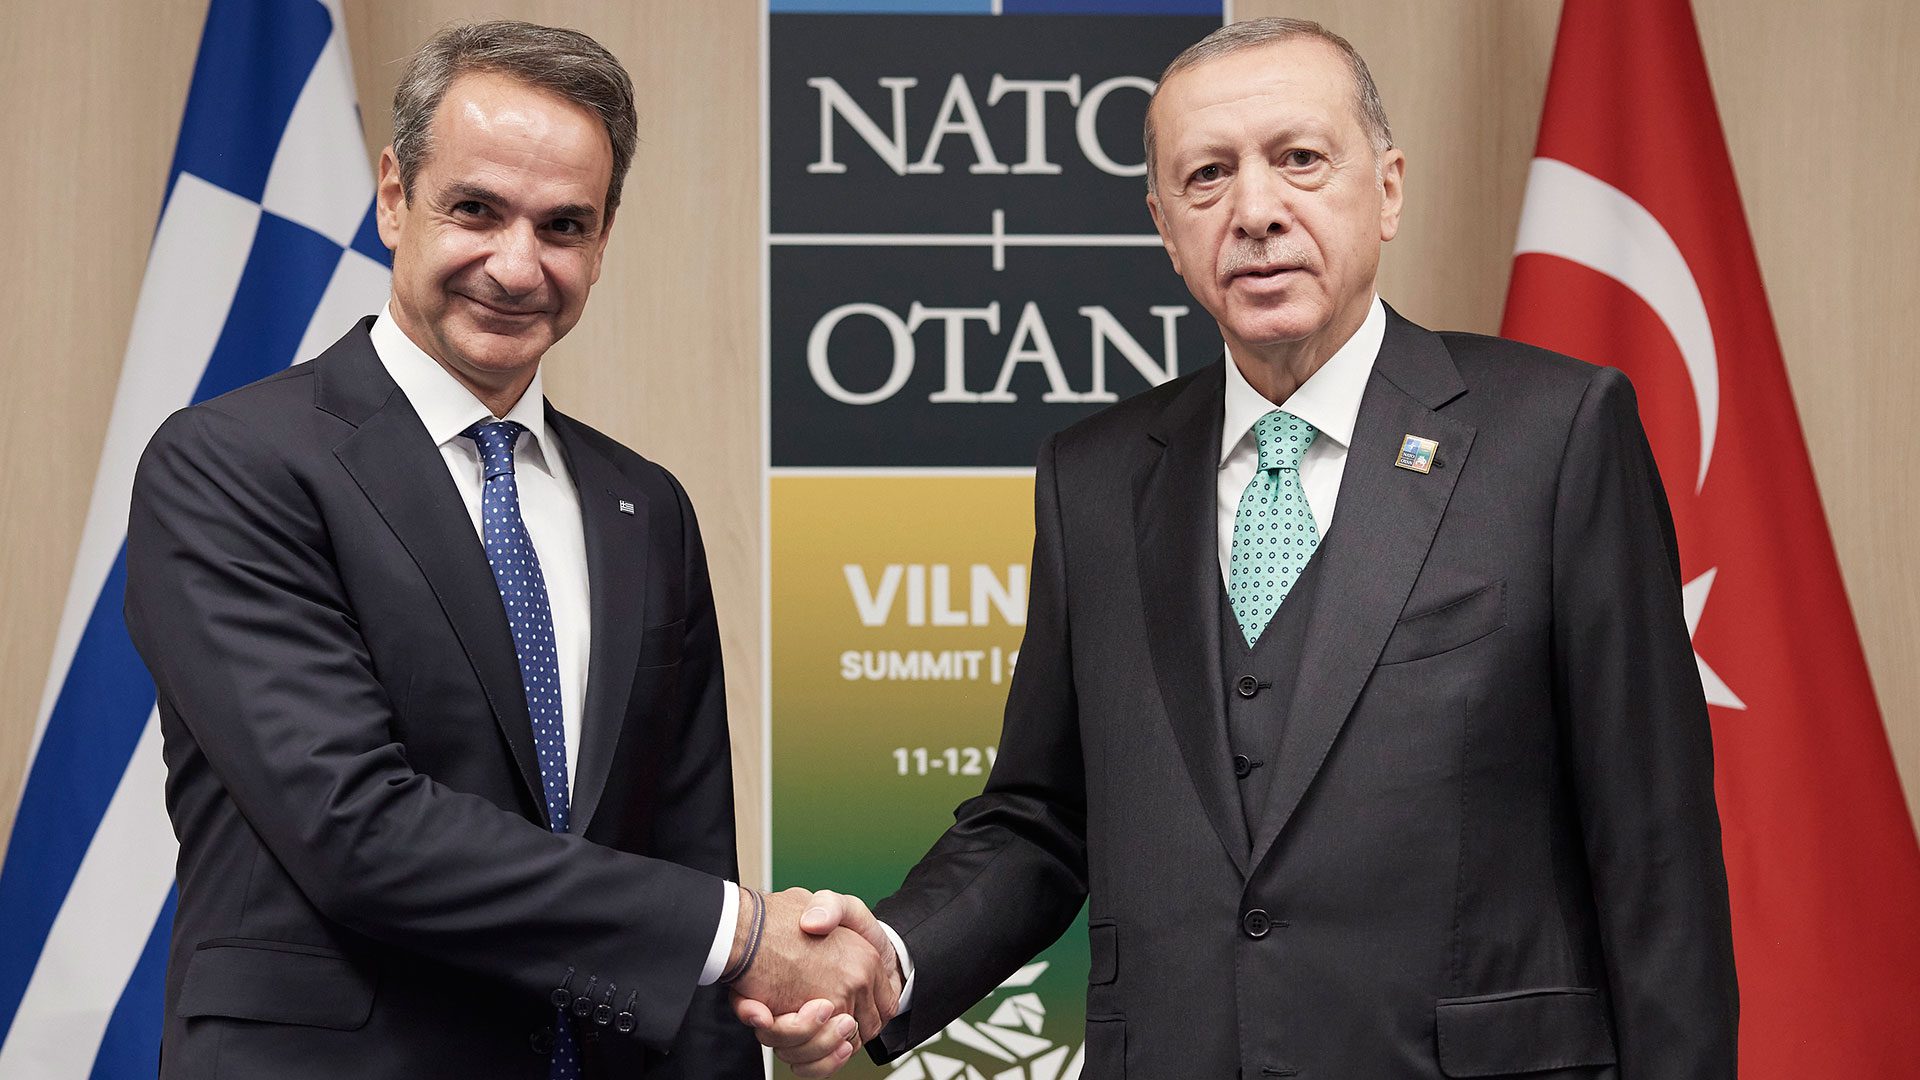 Αδιανόητο: Η Τουρκία ευχαρίστησε τον Μητσοτάκη που παρέδωσε κυριαρχία στην Κάσο! – Χθες έλεγε ότι «μας ταλαιπώρησαν λίγο οι φίλοι μας οι Τούρκοι»!